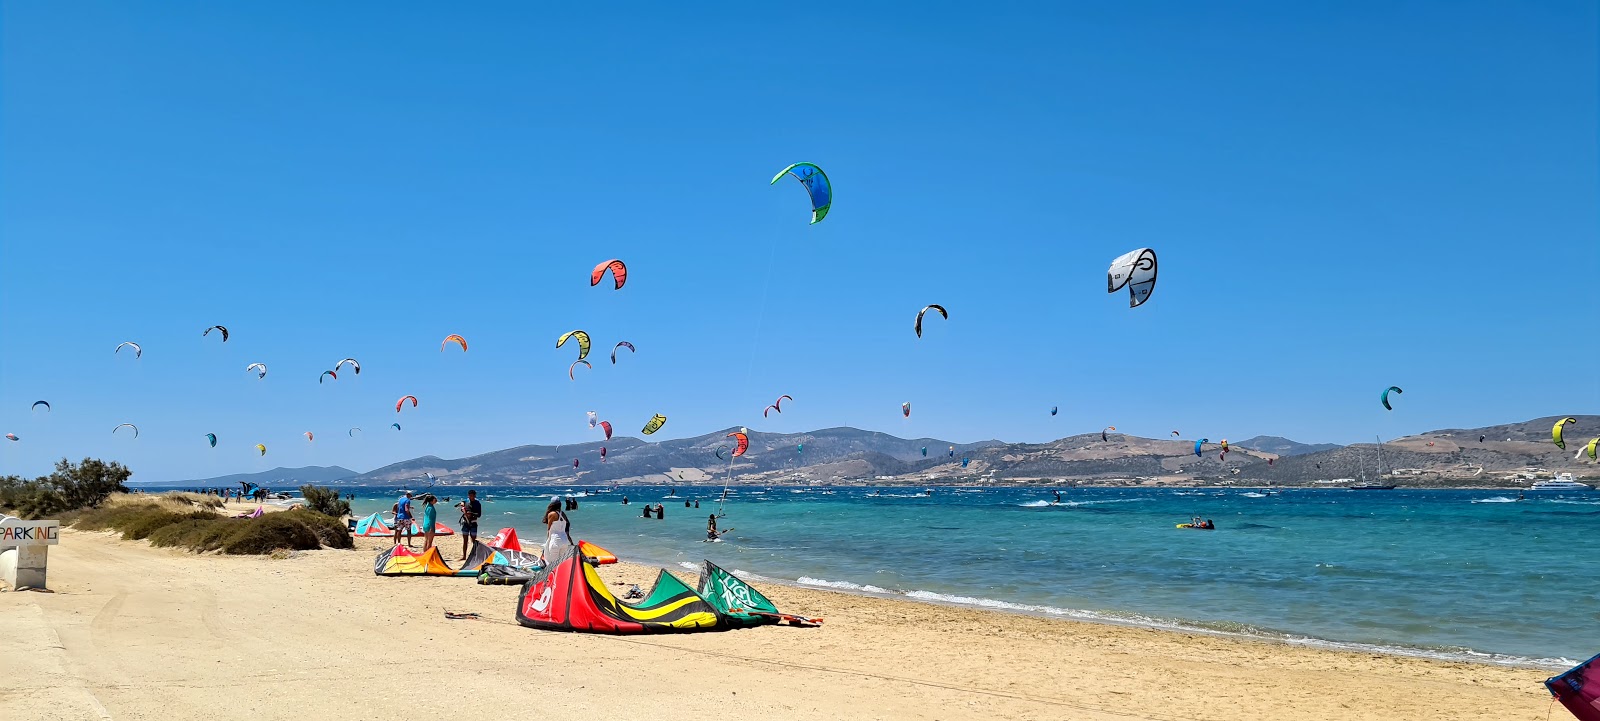 Paros Kite beach'in fotoğrafı geniş plaj ile birlikte